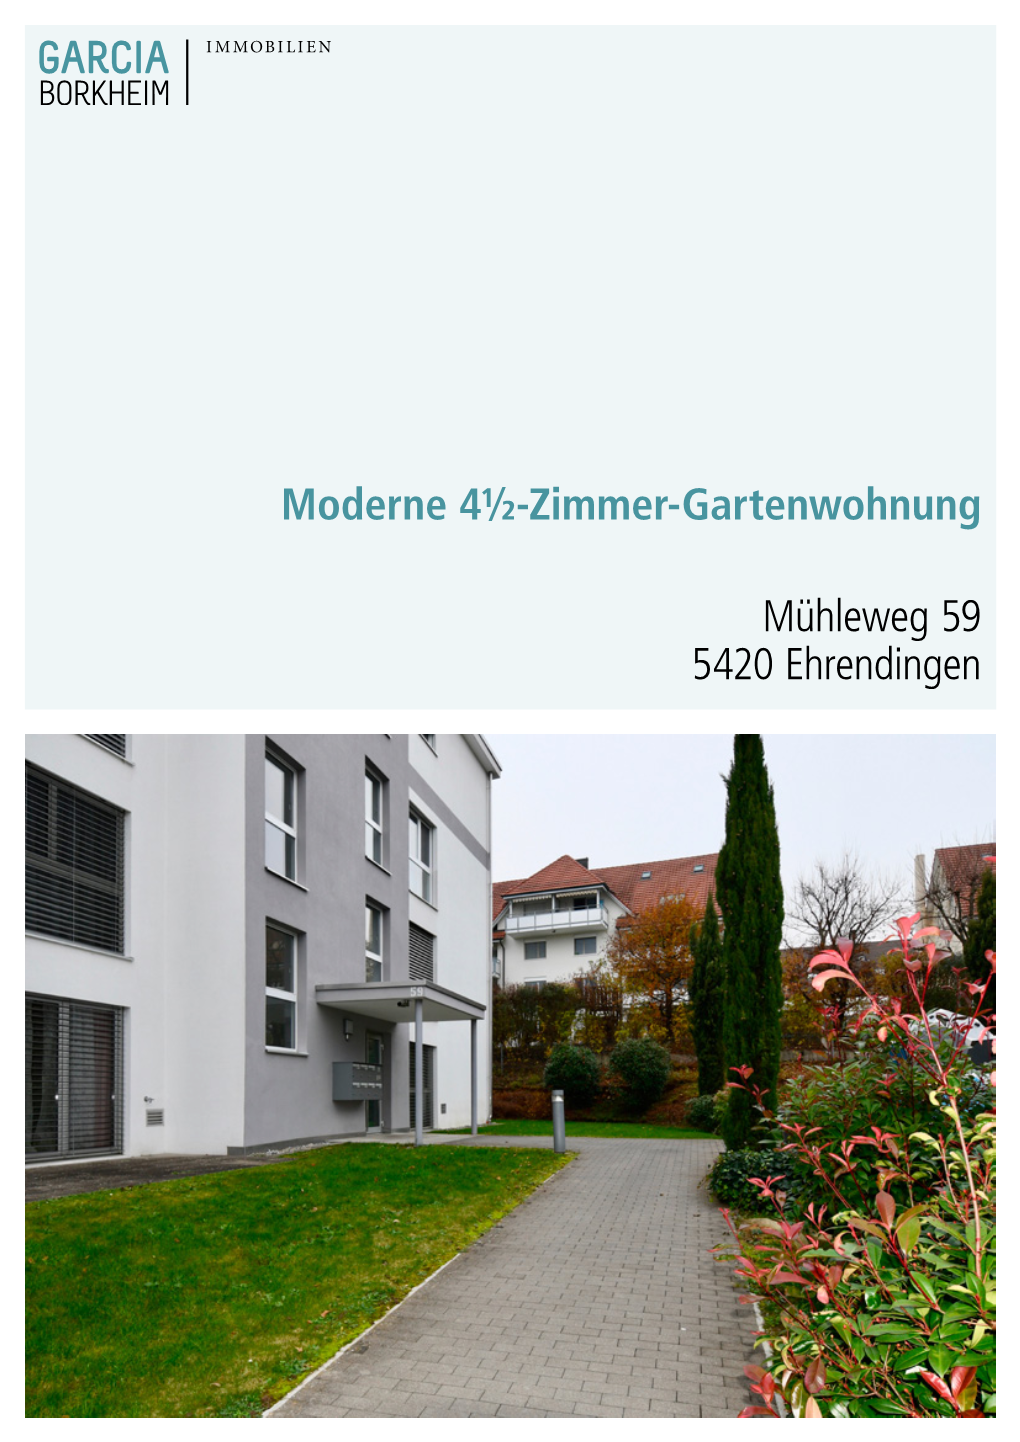 Moderne 4½-Zimmer-Gartenwohnung Mühleweg 59 5420 Ehrendingen